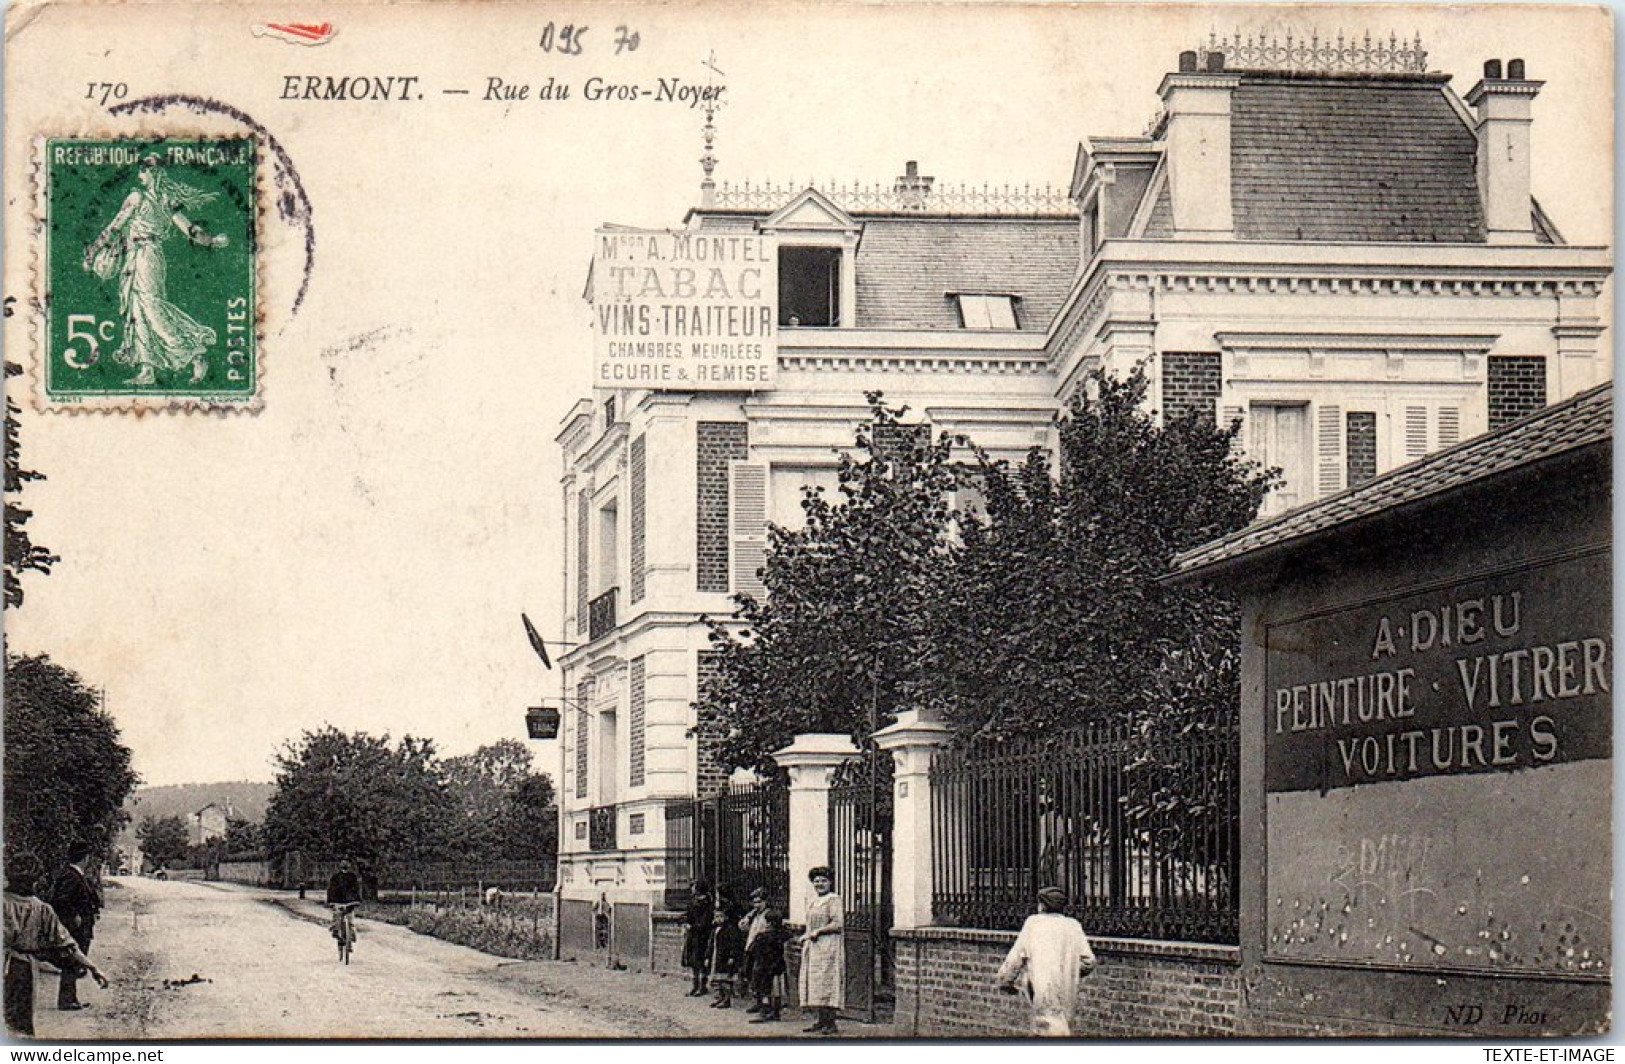 95 ERMONT - La Rue Du Gros Noyer, Ets A DIEU - Ermont-Eaubonne